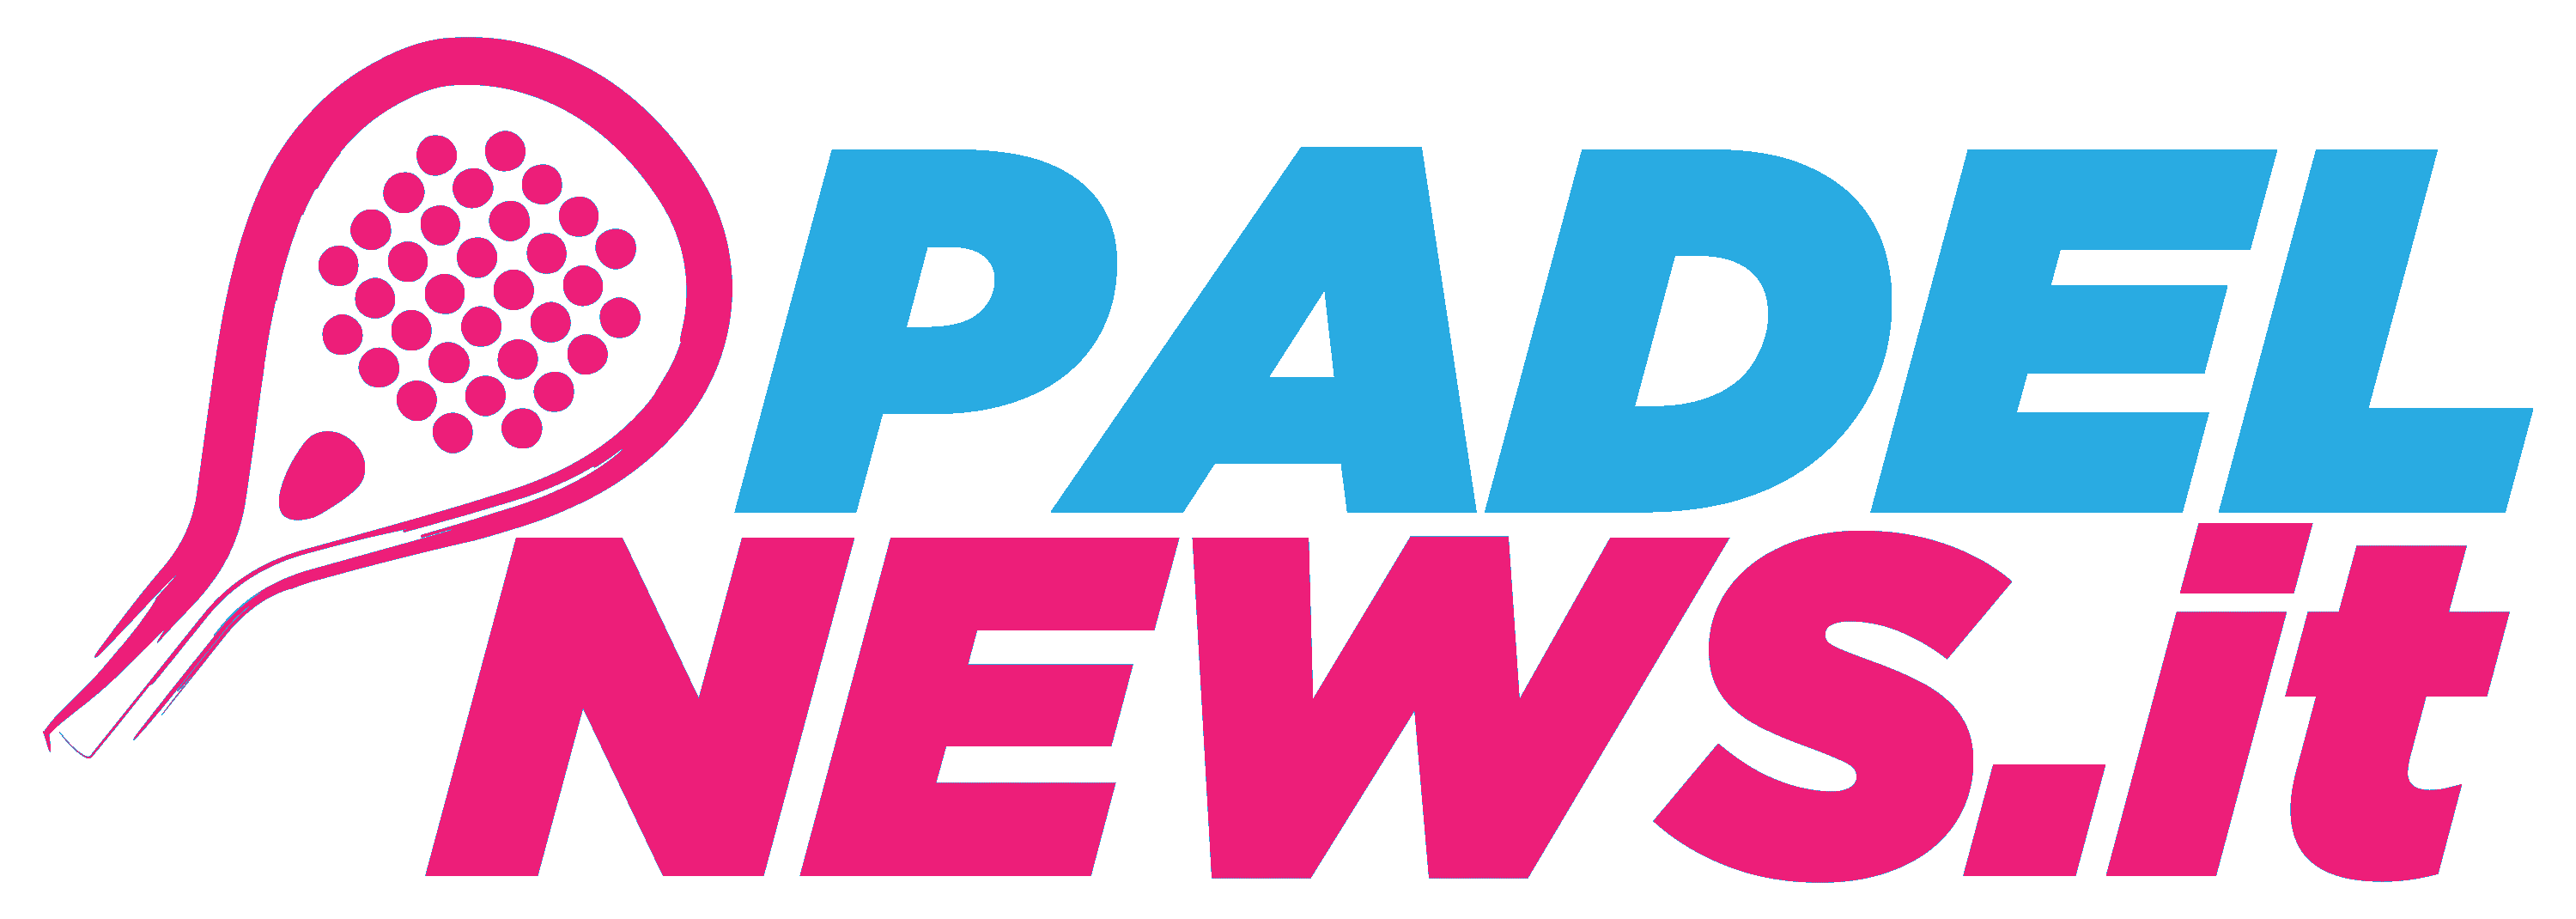 PadelNews.it